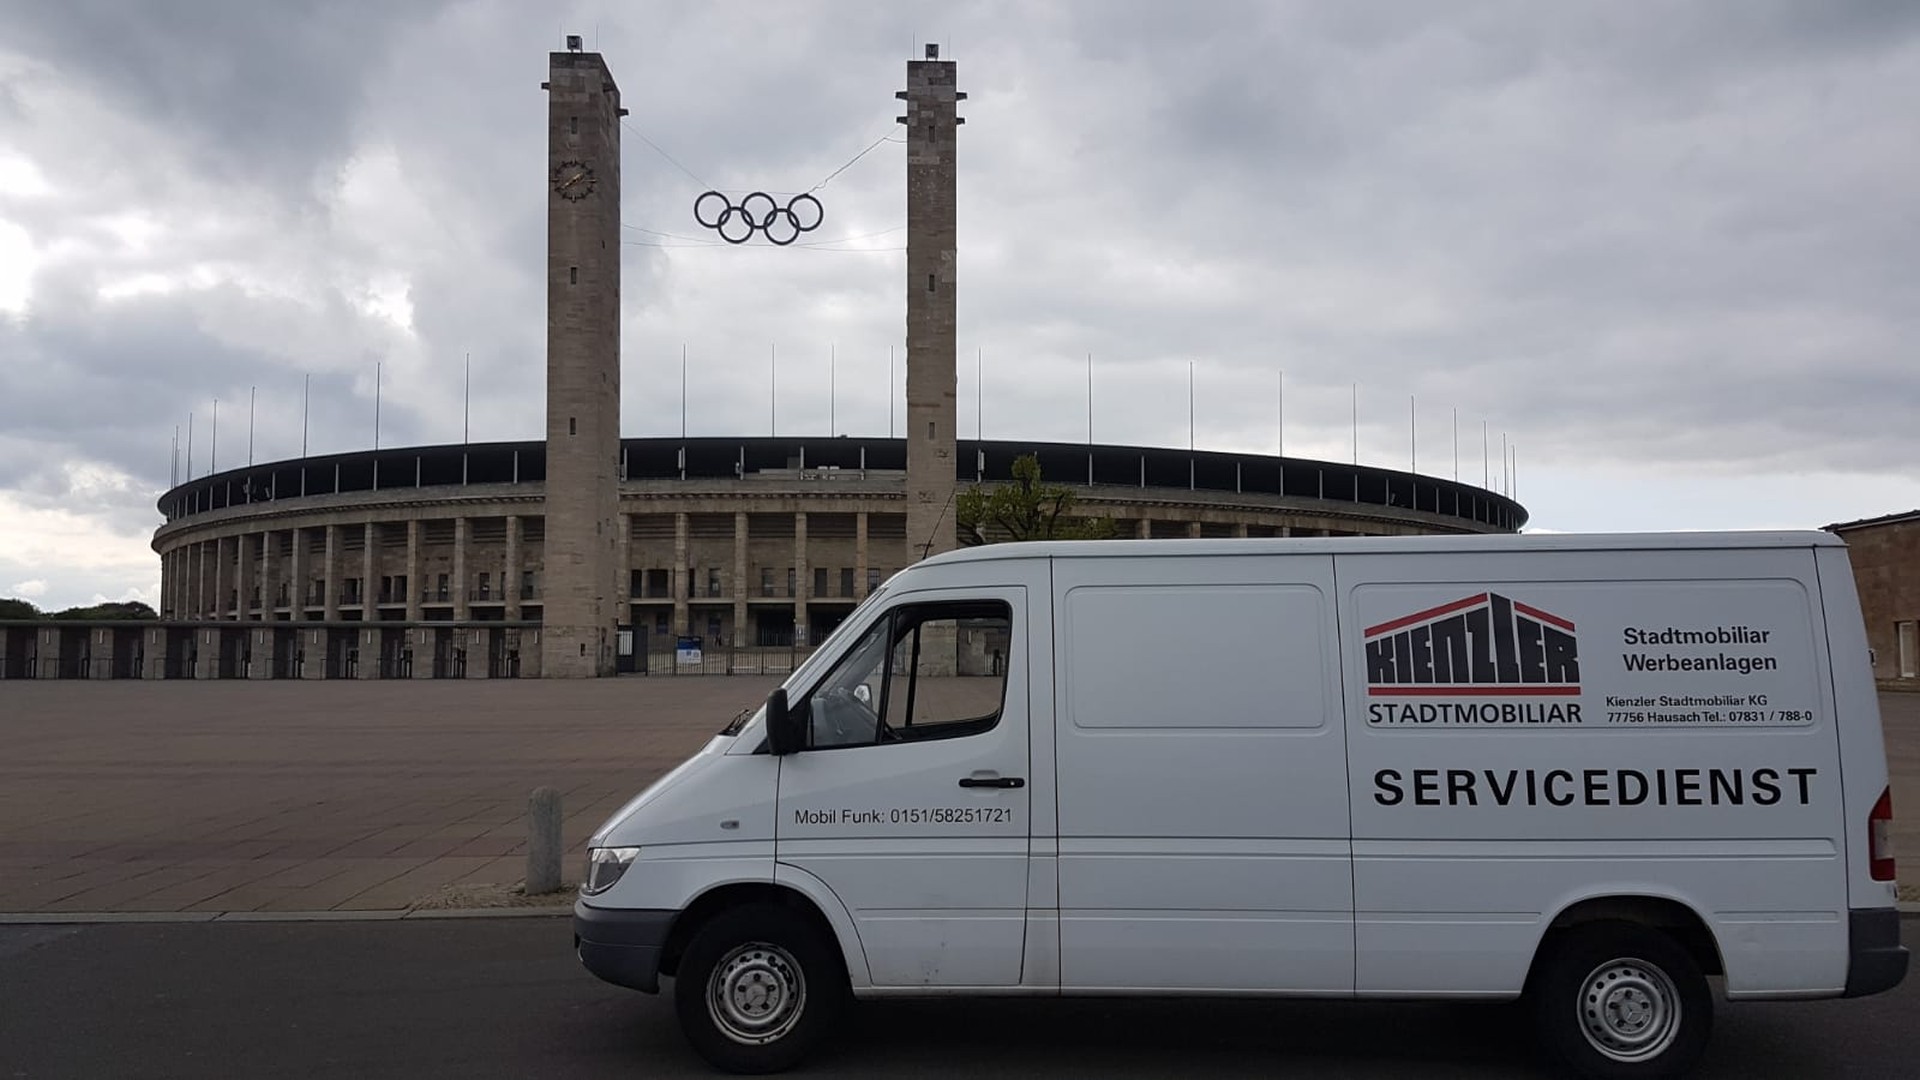 Unsere Mitarbeiter, die das Material für den Ausstellungsstand nach Berlin brachten, schauten mit dem Kienzler Service-Fahrzeug bei Berliner Sehenswürdigkeiten vorbei. 